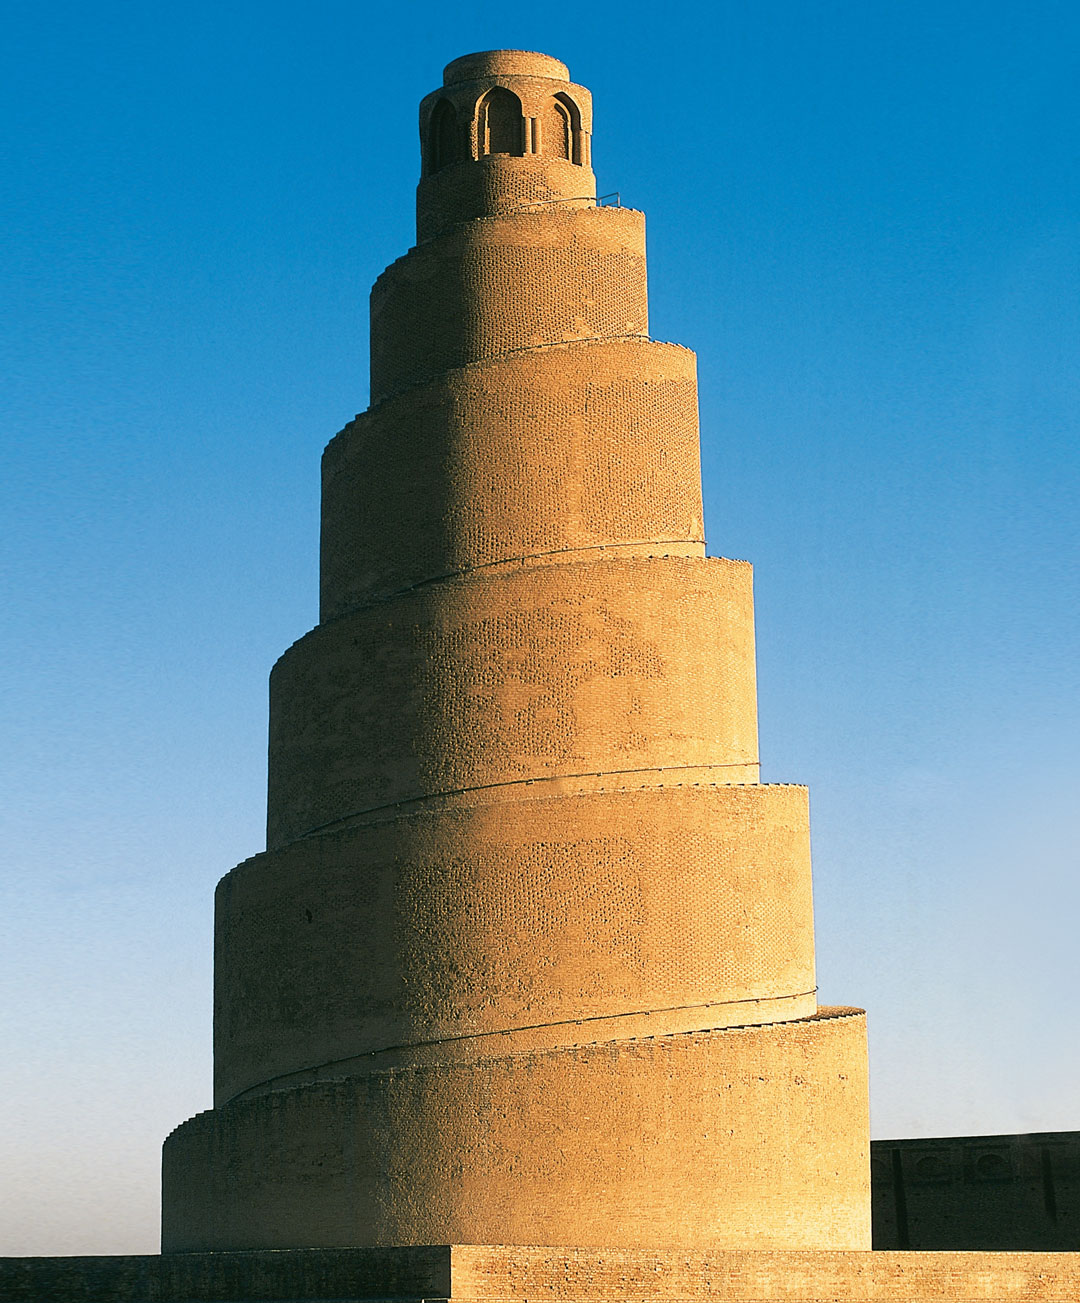 Malwiya Minaret, Samarra, Iraq, 851. From Brick Mini Format